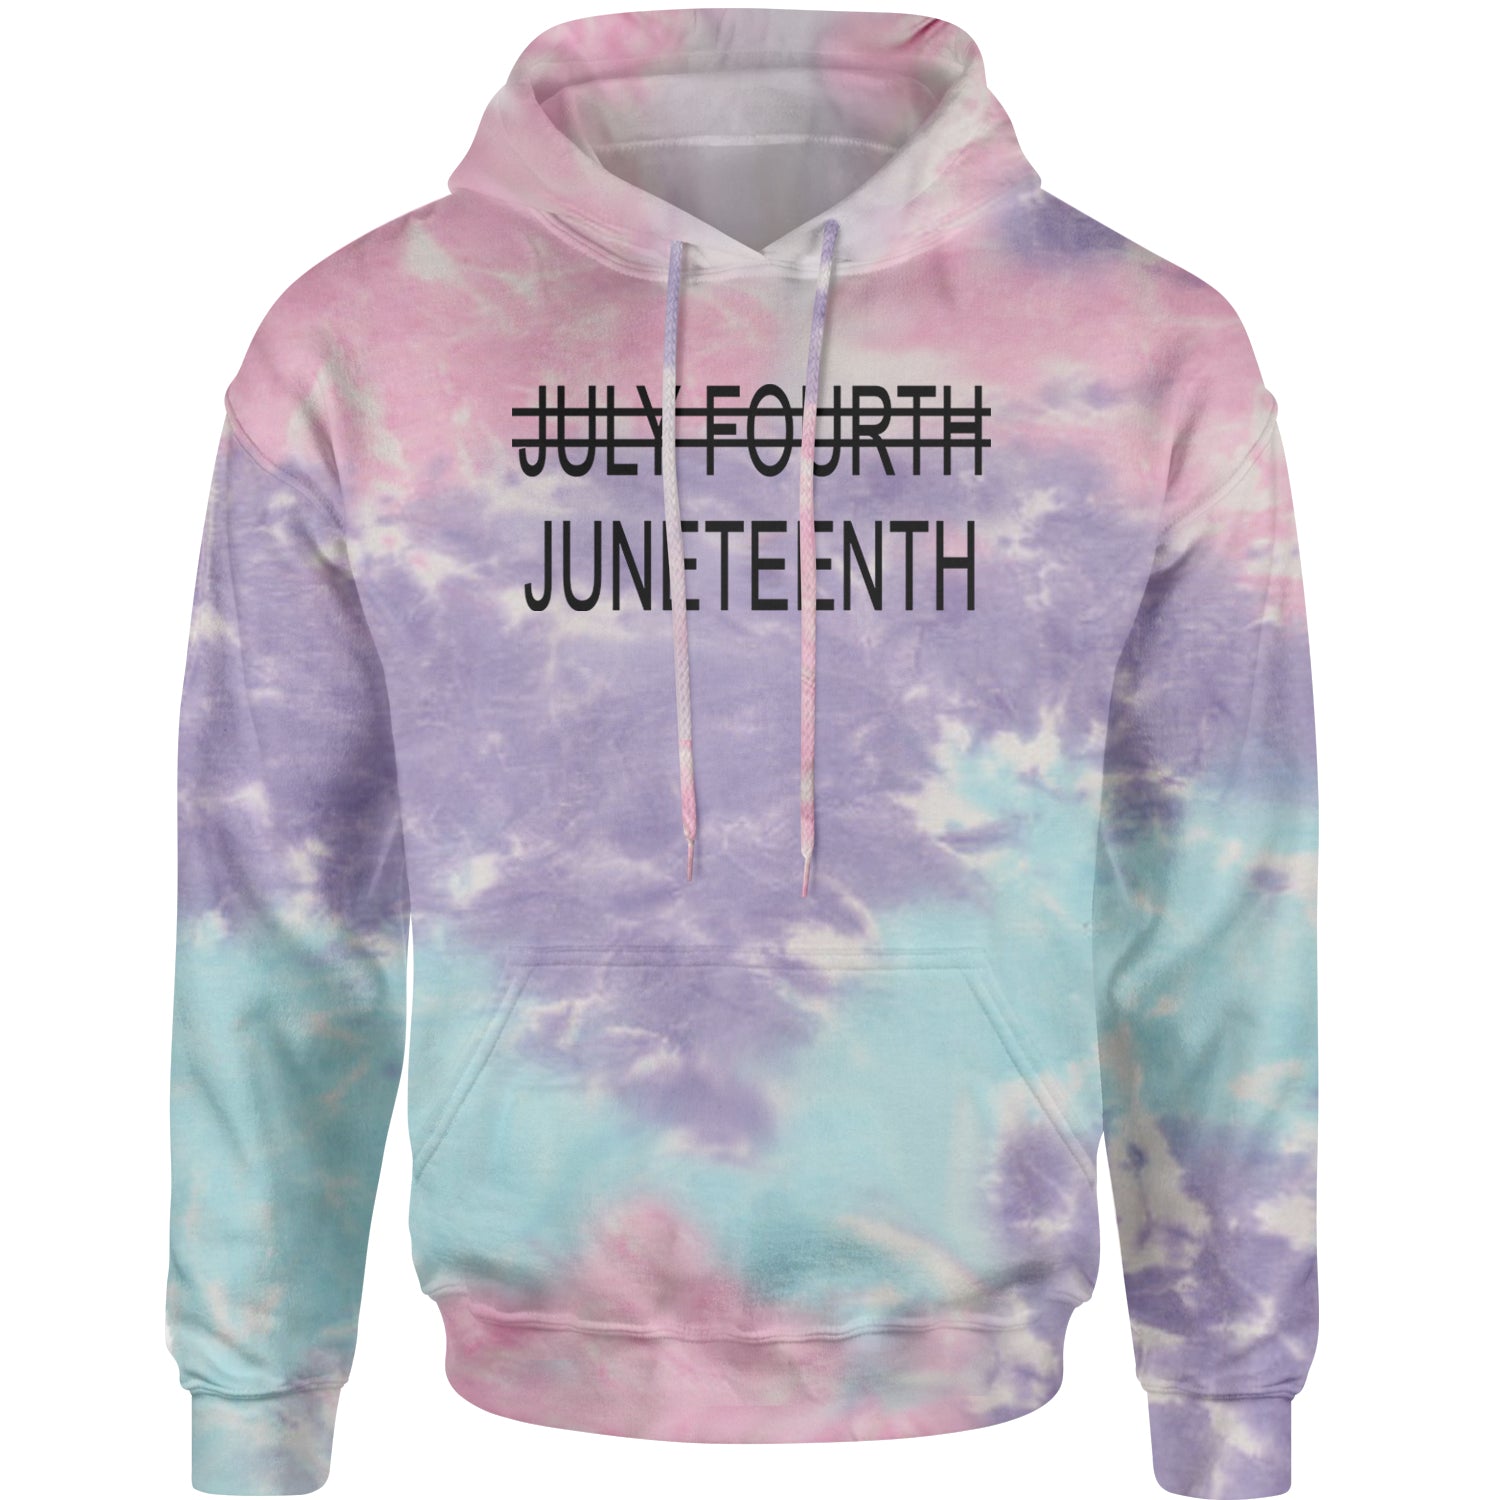 Juneteenth (July Fourth Crossed Out) Jubilee Adult Hoodie Sweatshirt